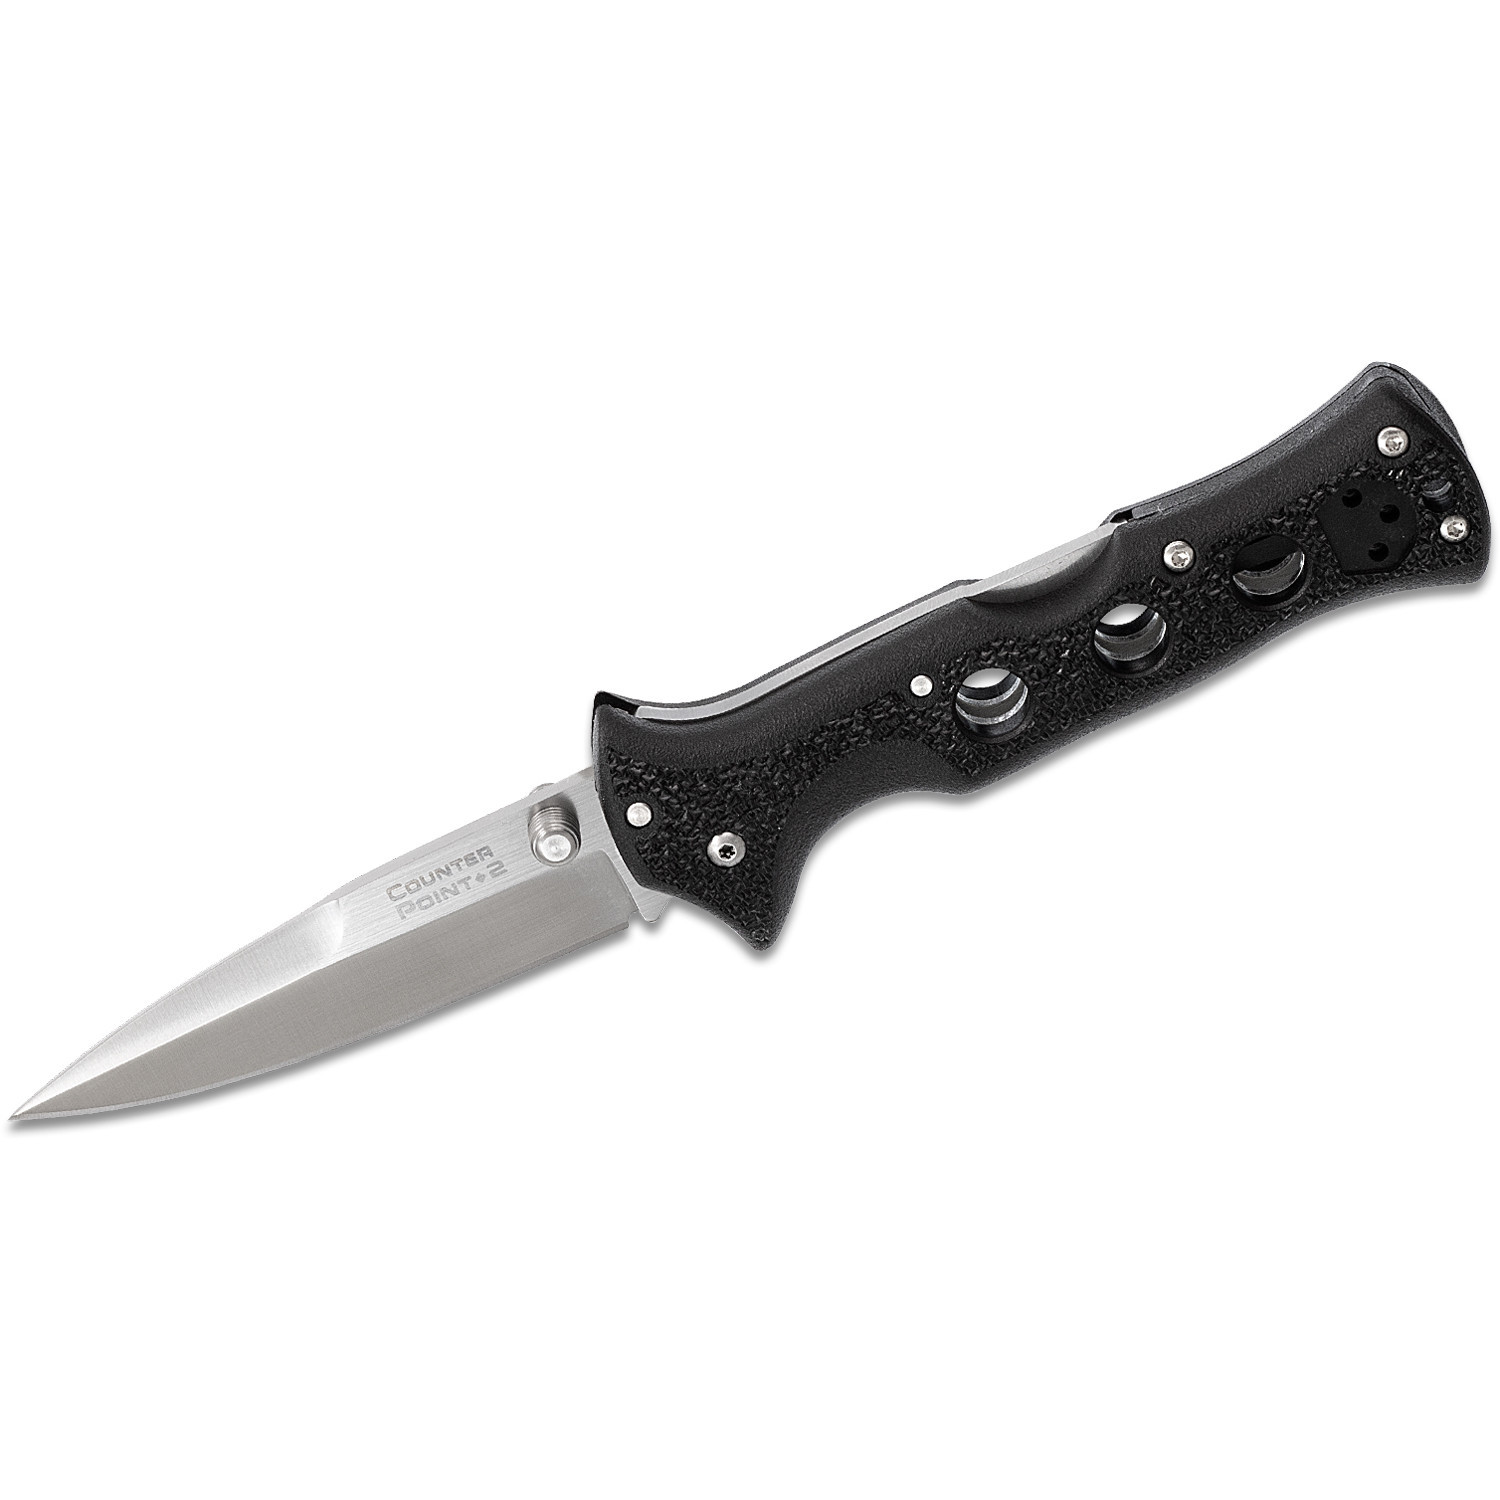 Складной нож Counter Point II - Cold Steel 10ACNC, сталь 440C, рукоять Grivory® (высококачественный полимер) черная - фото 2